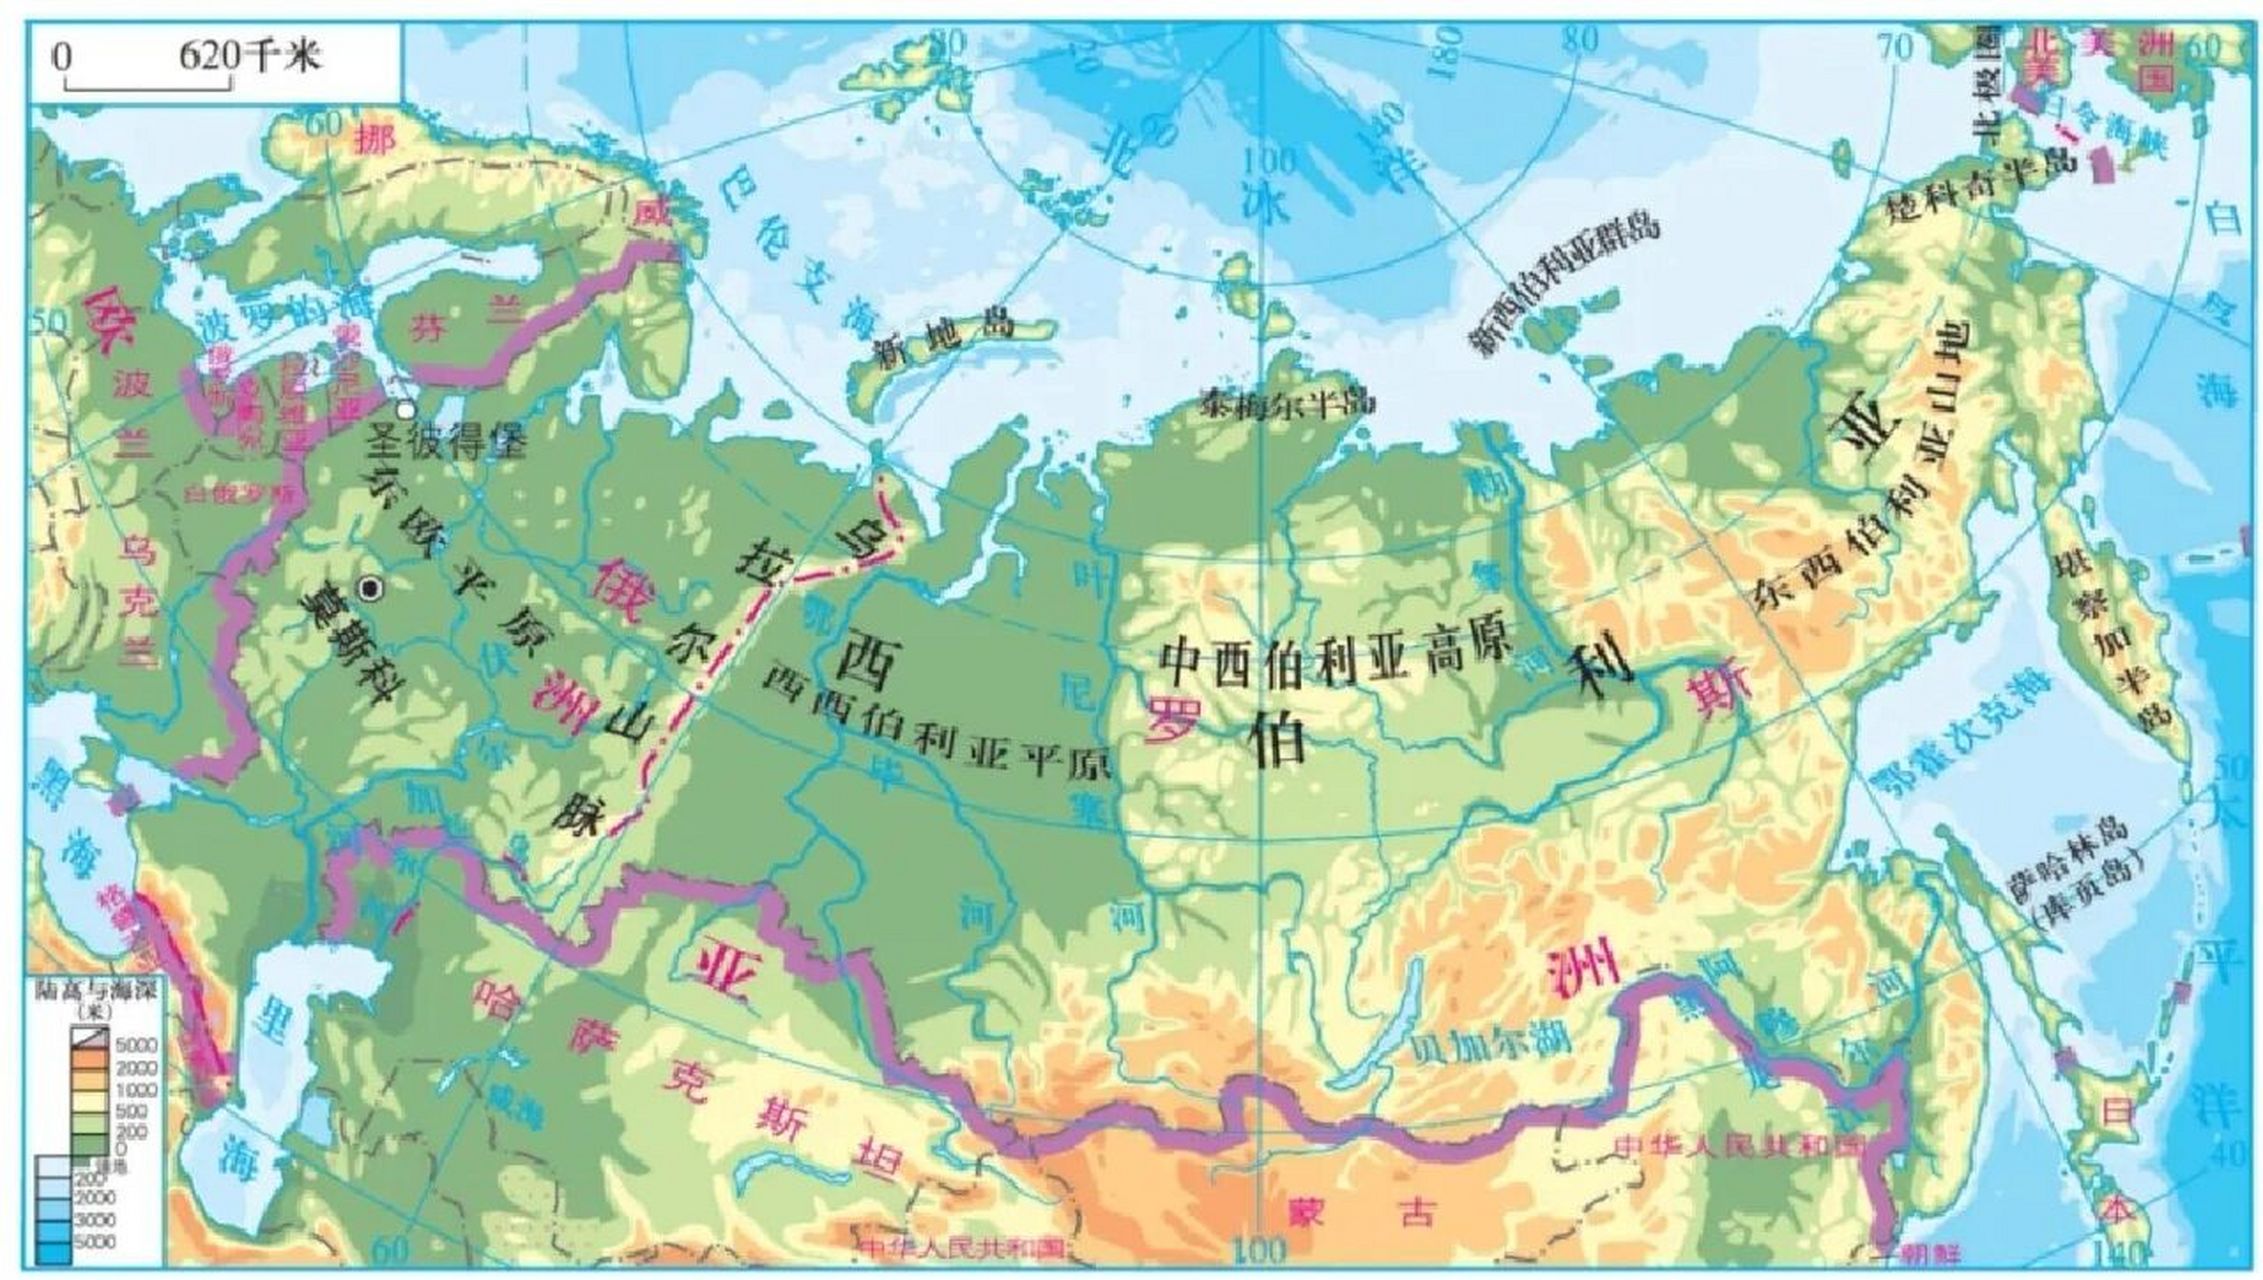 区域地理高清地图填图:北亚和俄罗斯 区域地理高清地图填图,北亚和